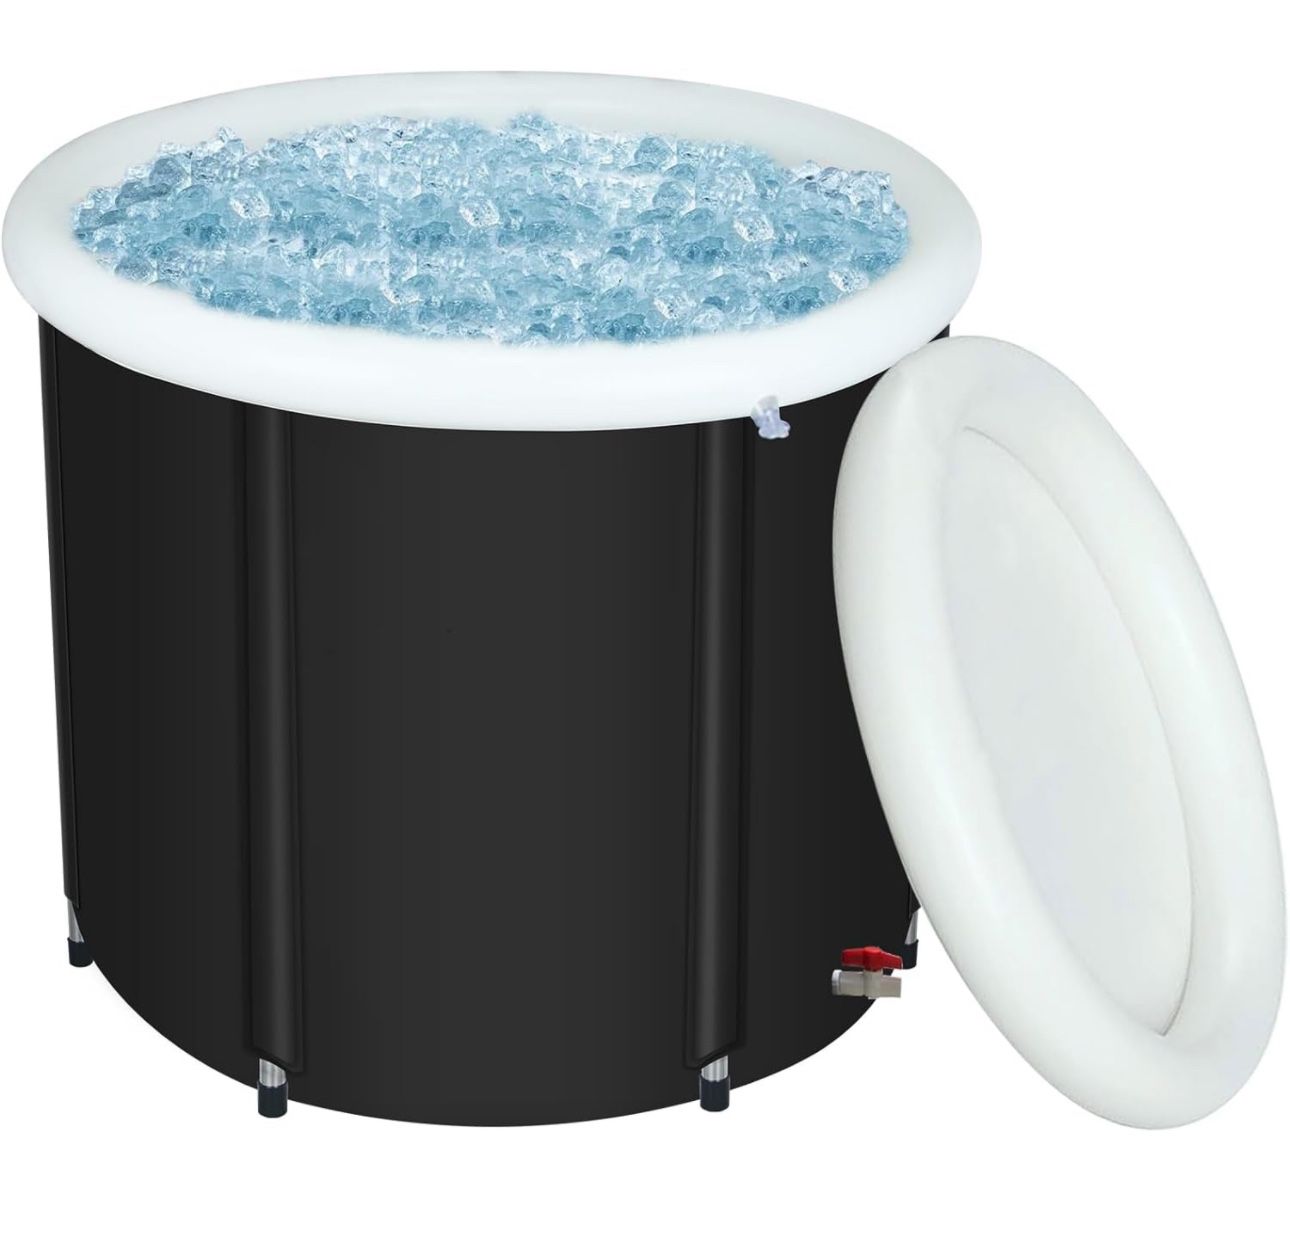 Foldable Ice Bath Tub 